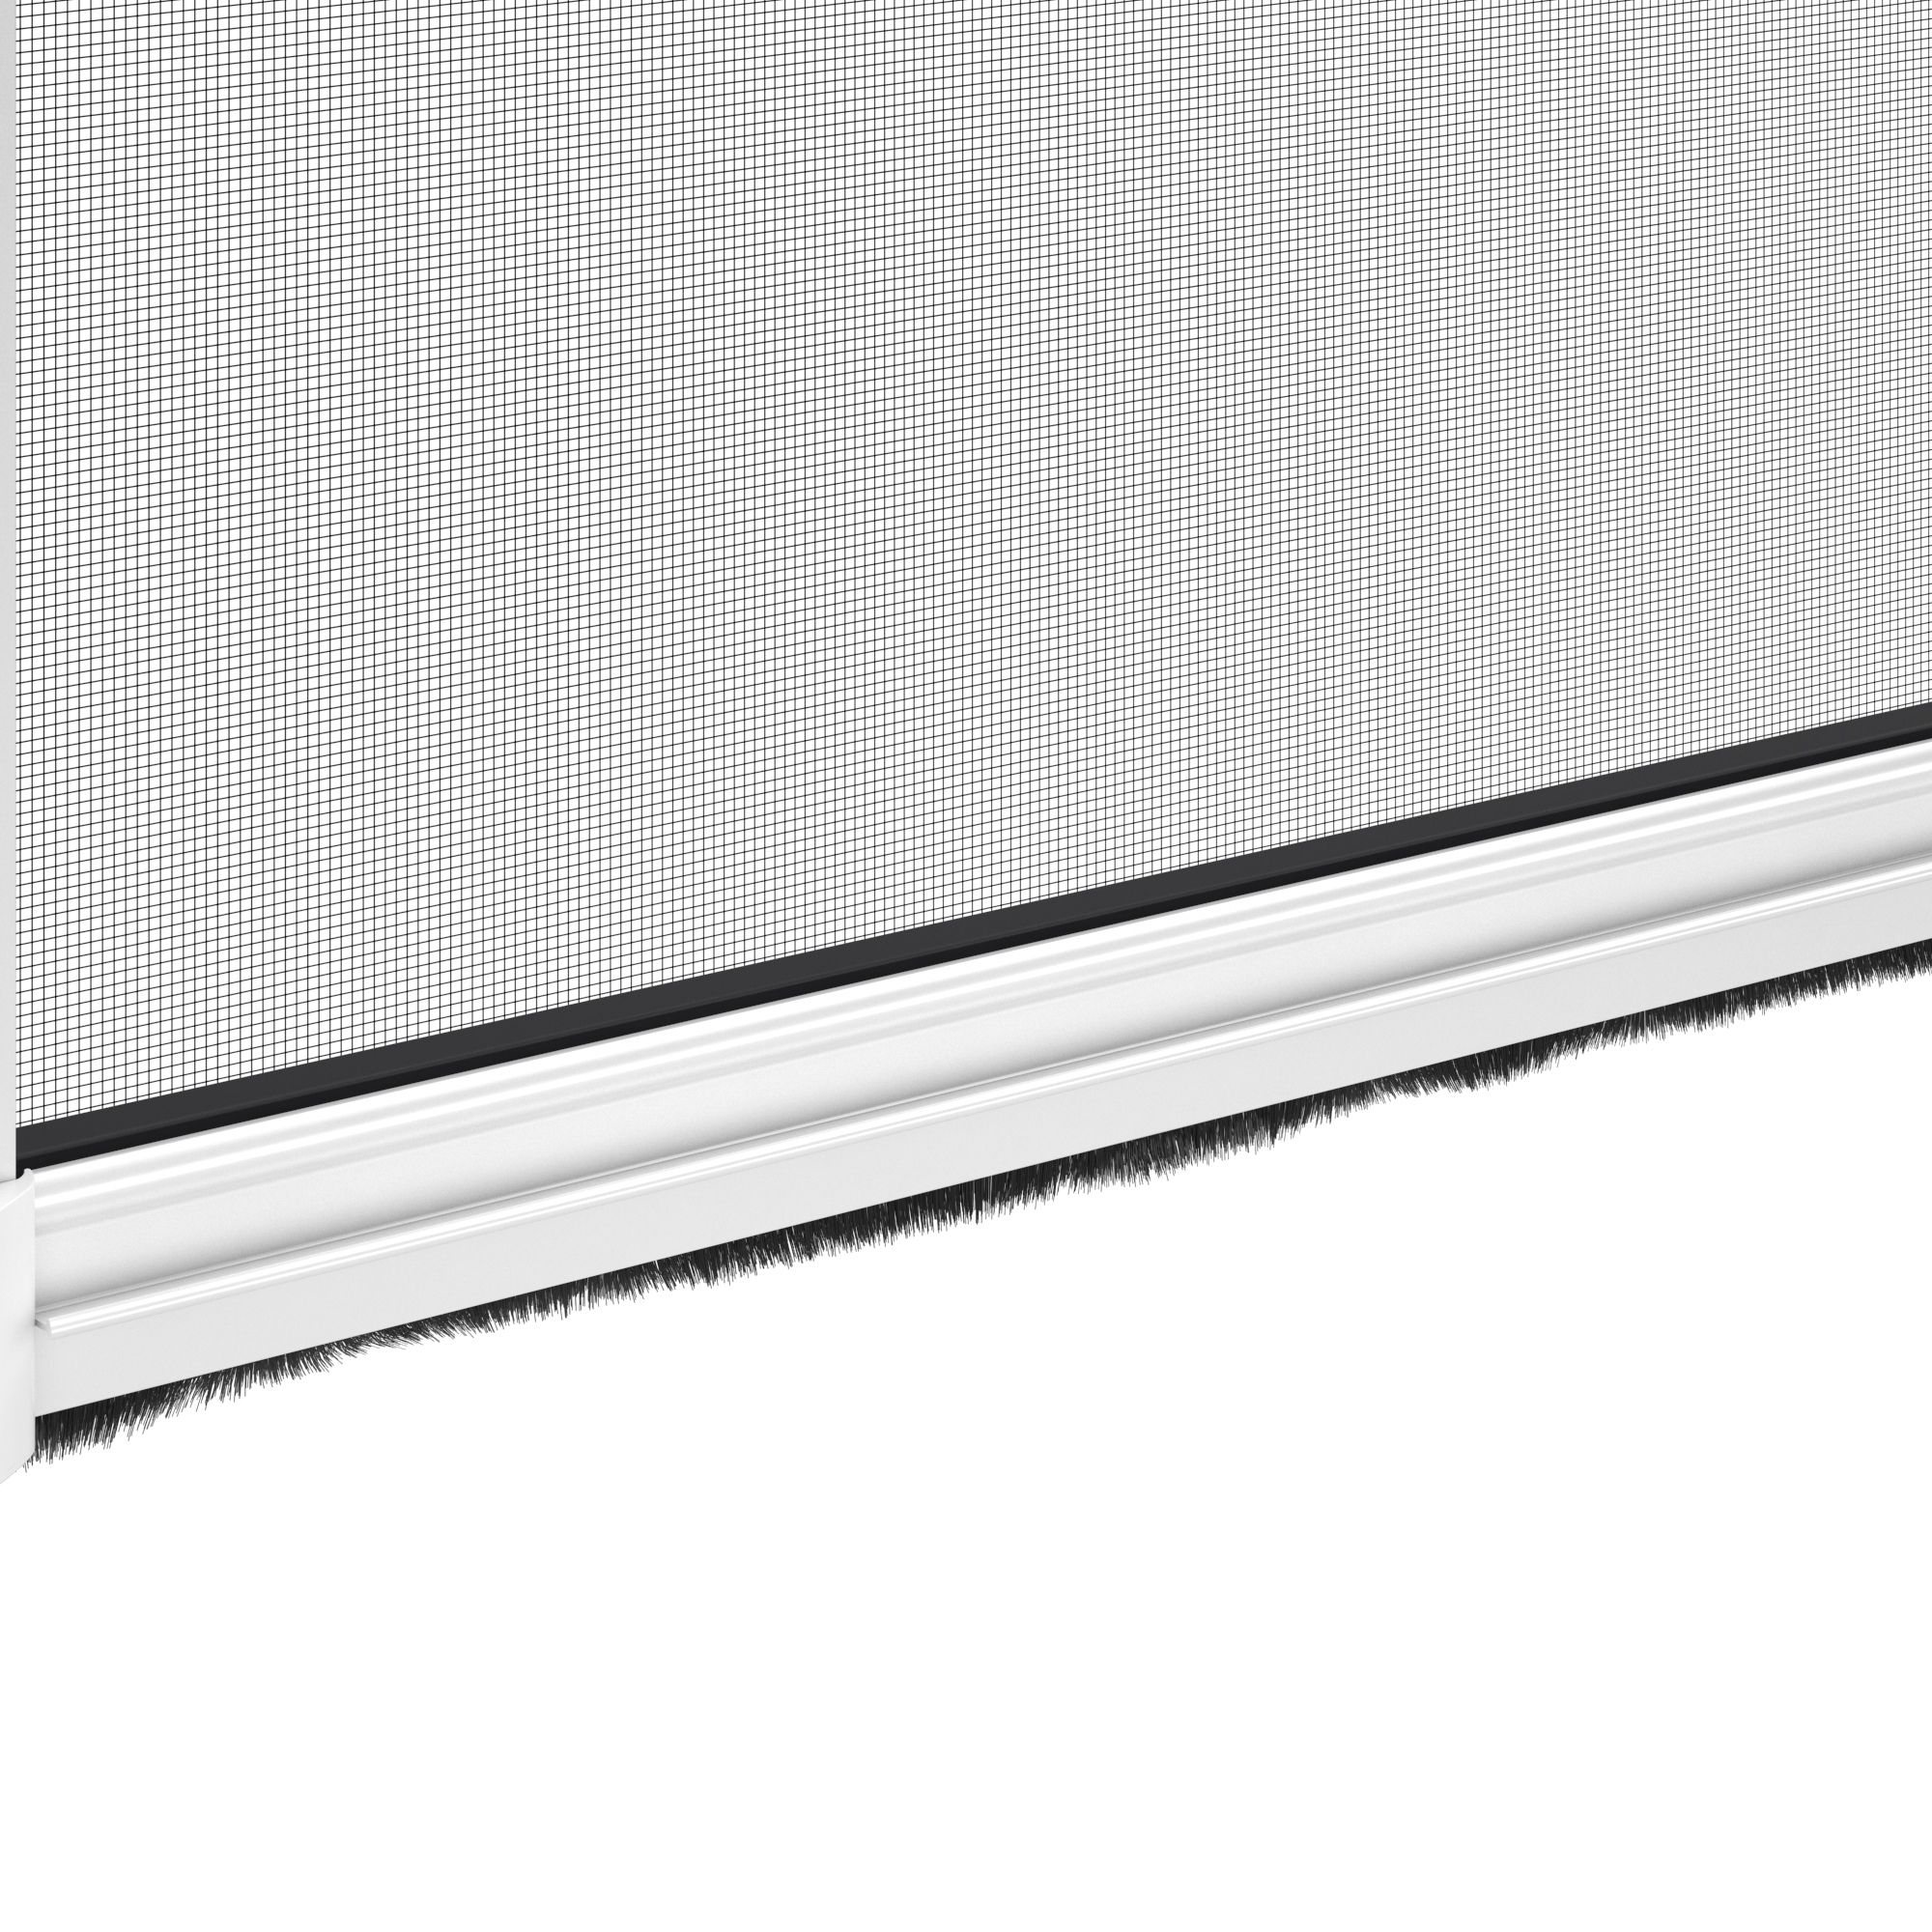 Zanzariera avvolgibile ARTENS per finestra L 130 x H 160 cm bianco - 5